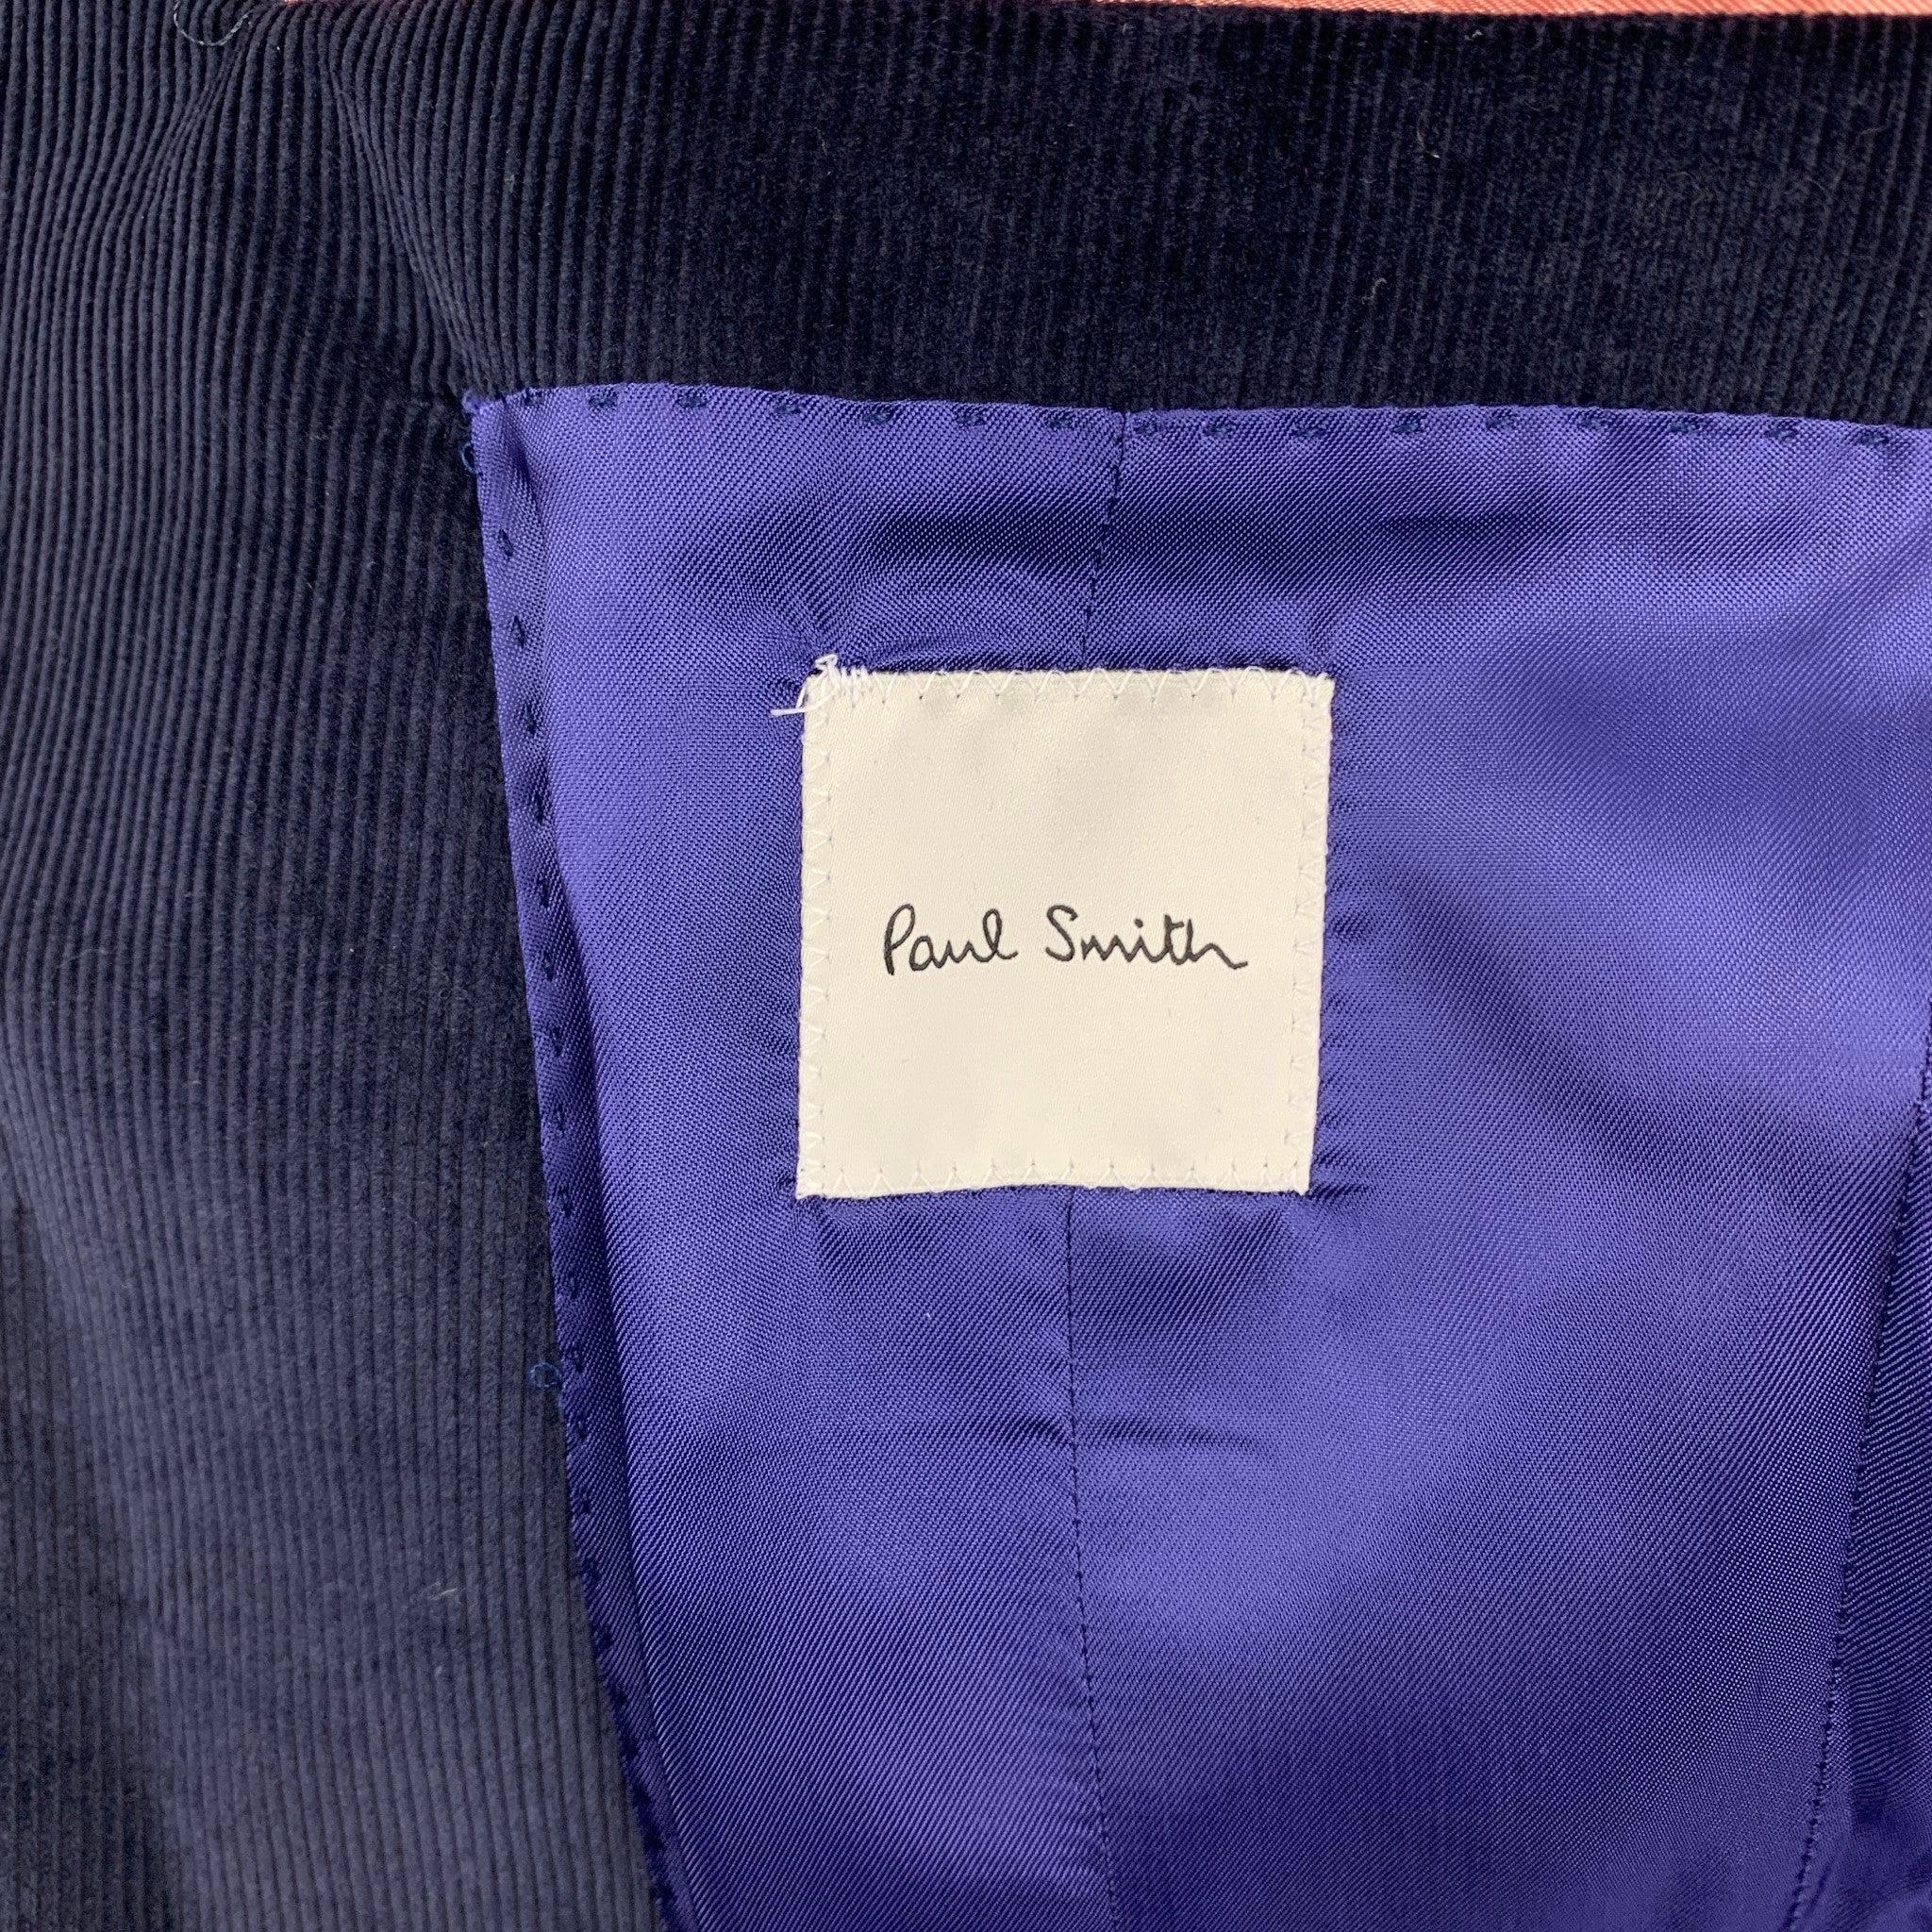 PAUL SMITH Size 38 Navy Corduroy Cotton Notch Lapel Sport Coat For Sale 2